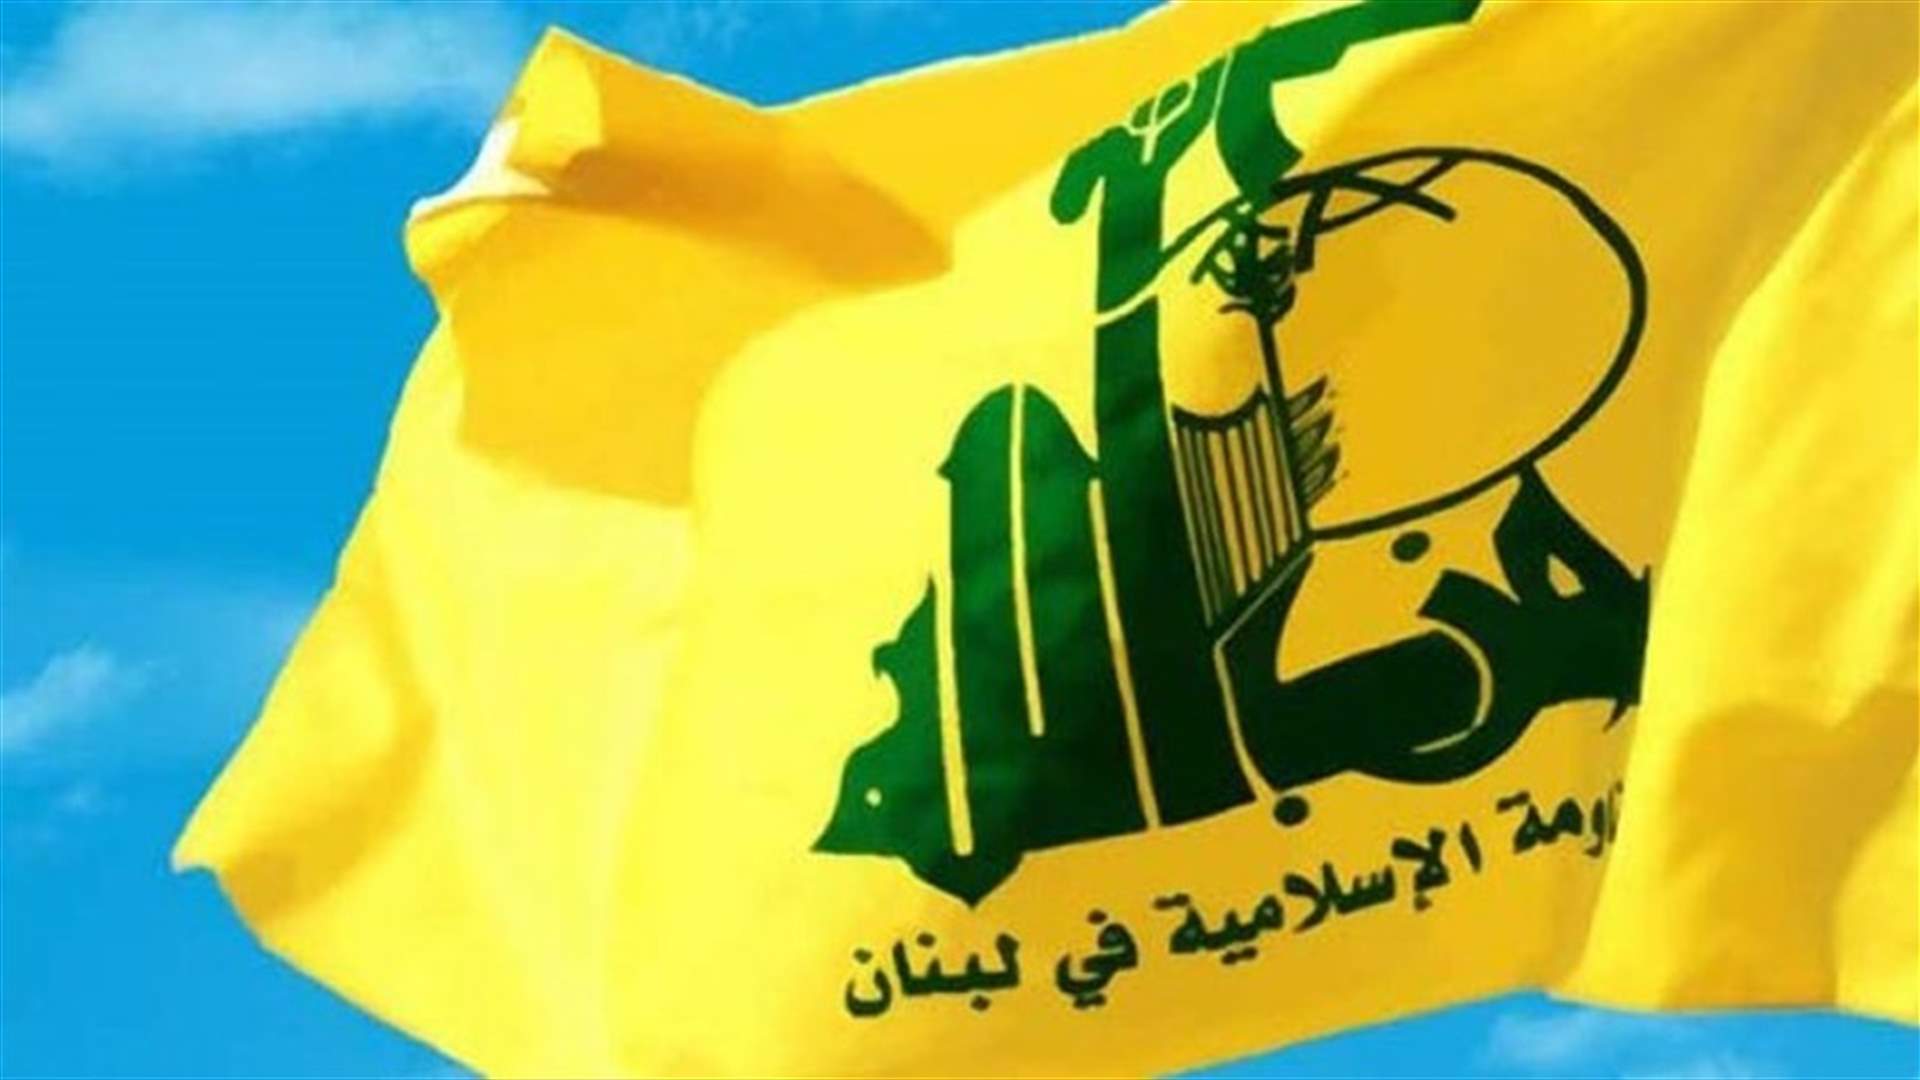 تجمع المحامين في حزب الله أثنى على قرار مازح: وصف السفيرة شيا لحزب الله بالارهابي هو إهانة وعدوان على الشعب اللبناني